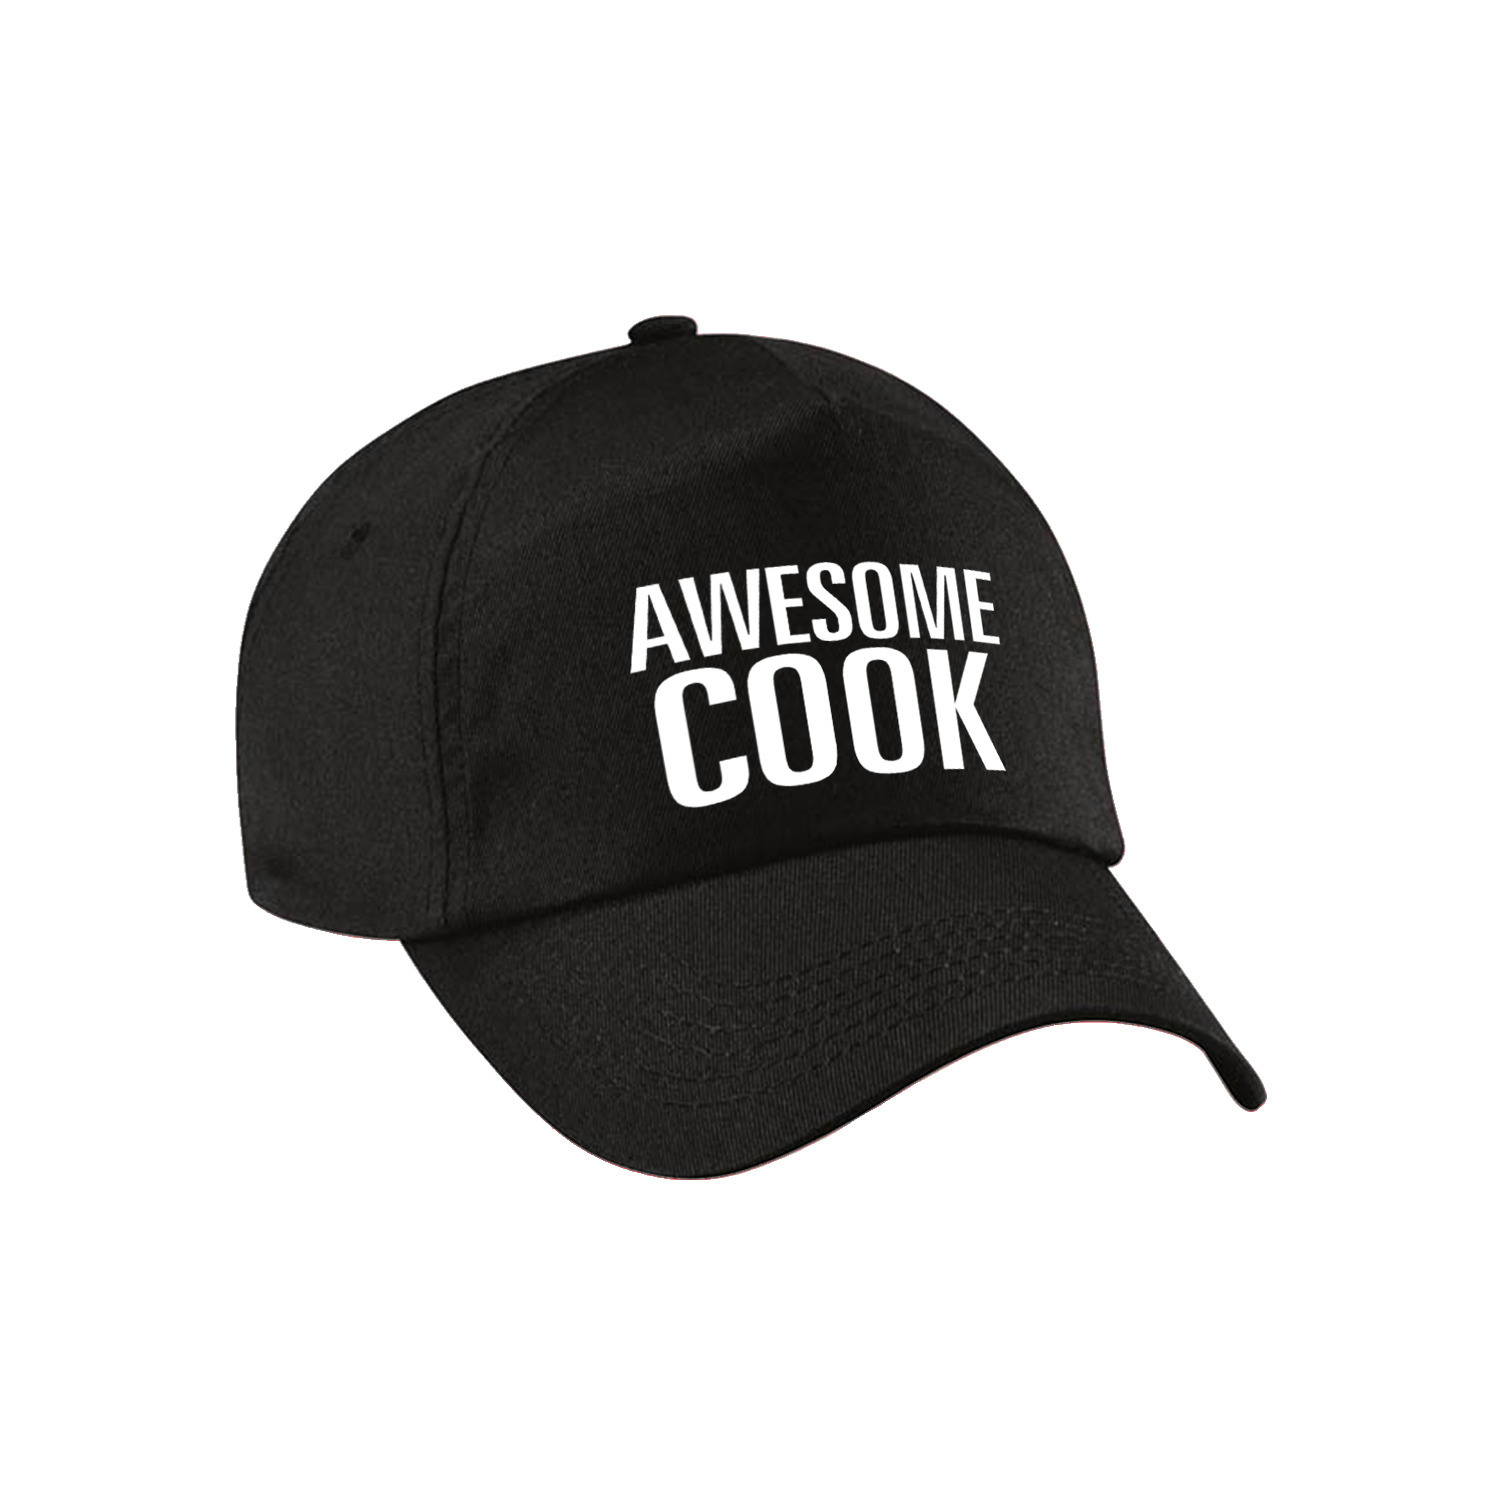 Awesome cook pet - cap zwart voor volwassenen - Geweldige kok cadeau